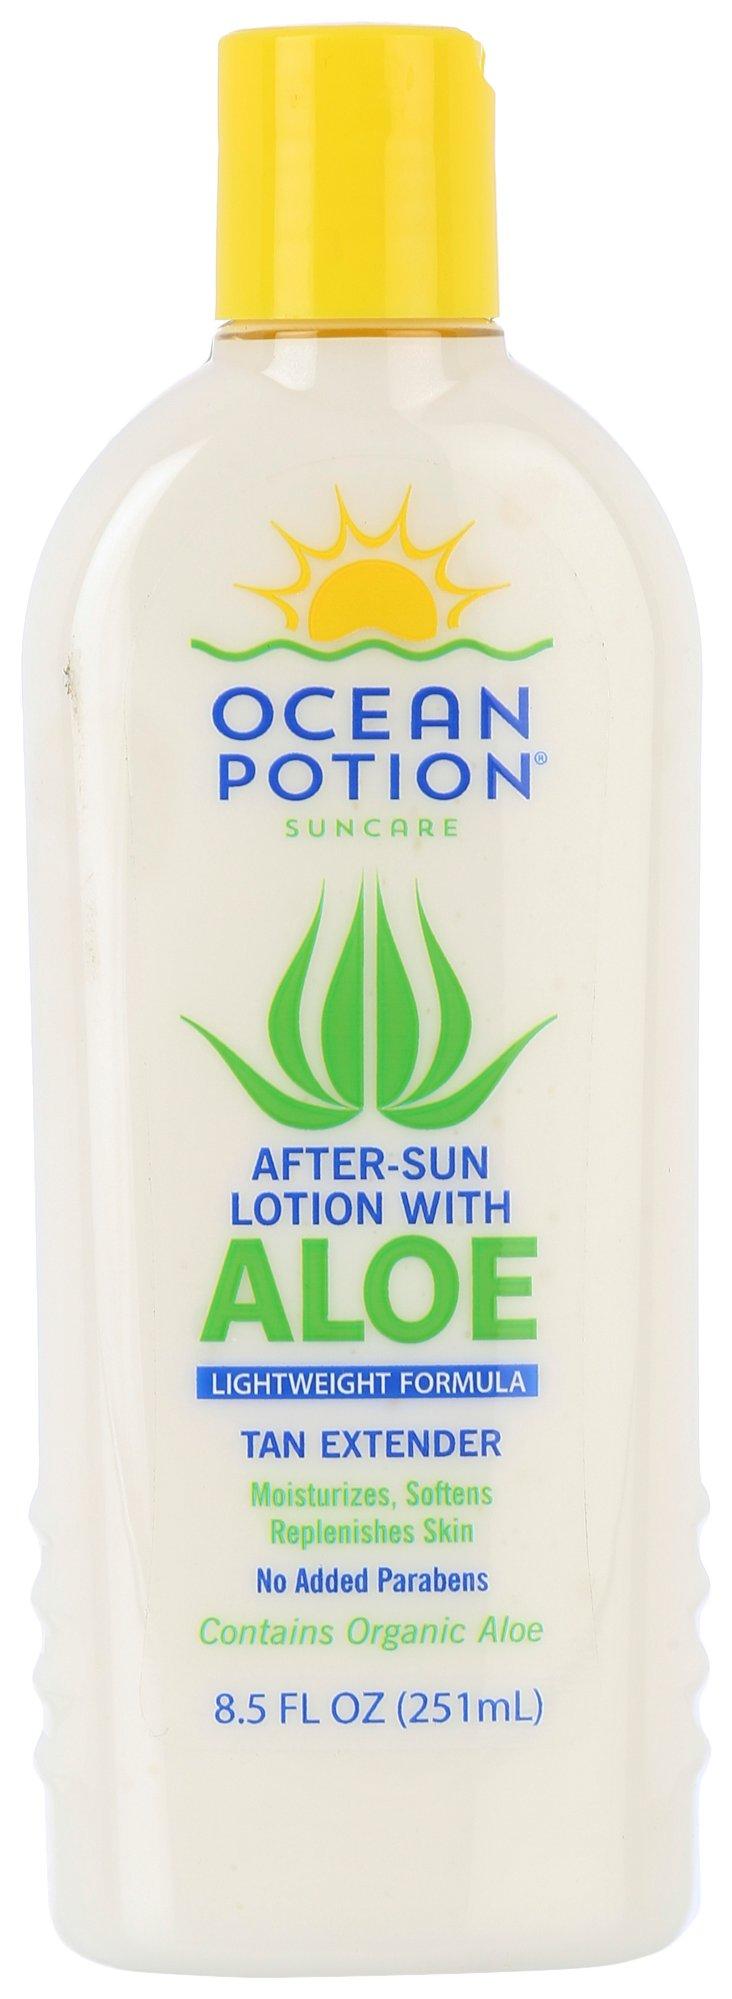 Ocean Potion 8.5 Fl.Oz. After-Sun Lotion